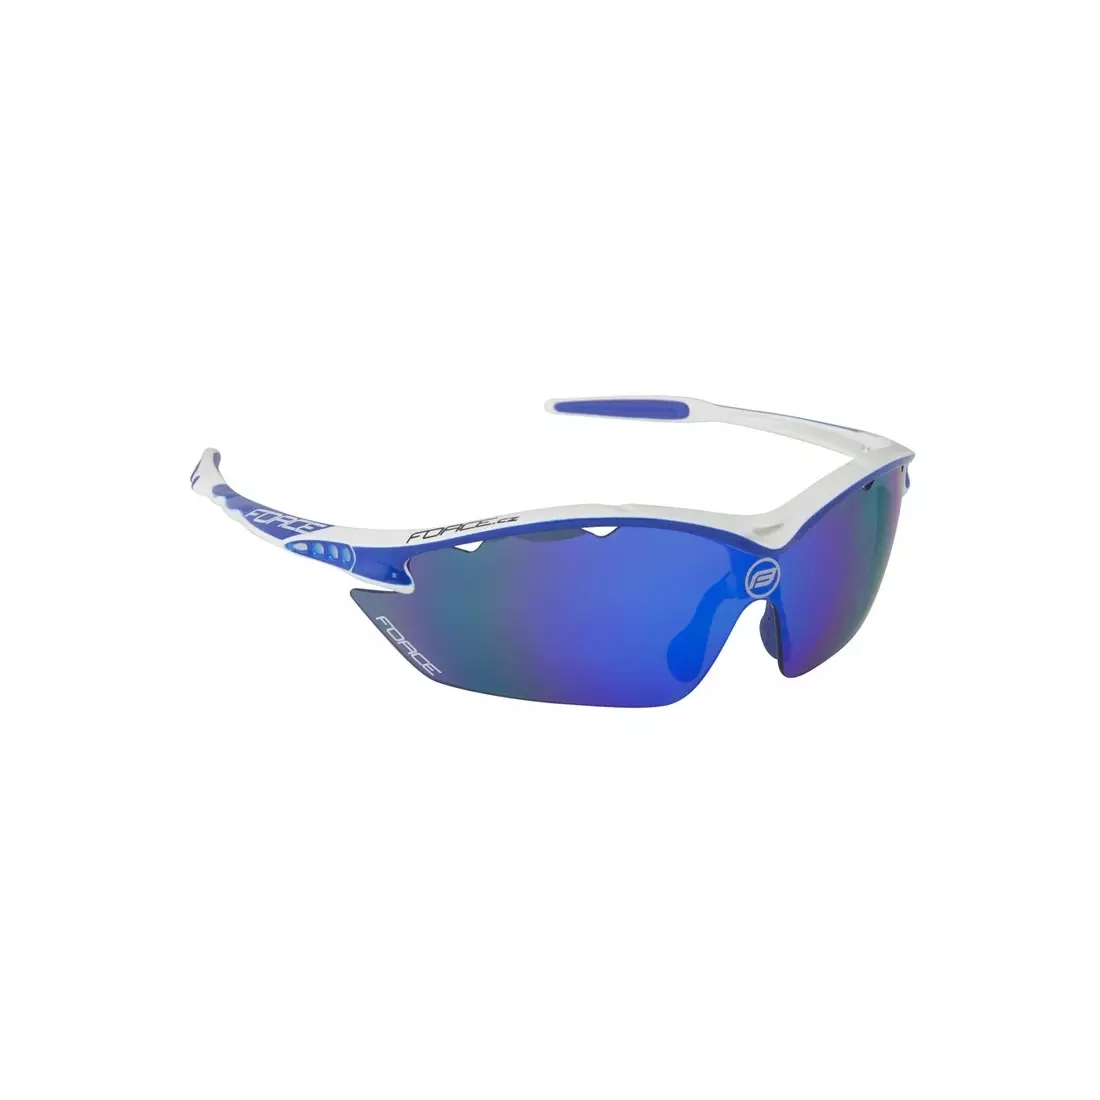 FORCE RON Športové/cyklistické okuliare bielo-modré 91010 vymeniteľné sklá